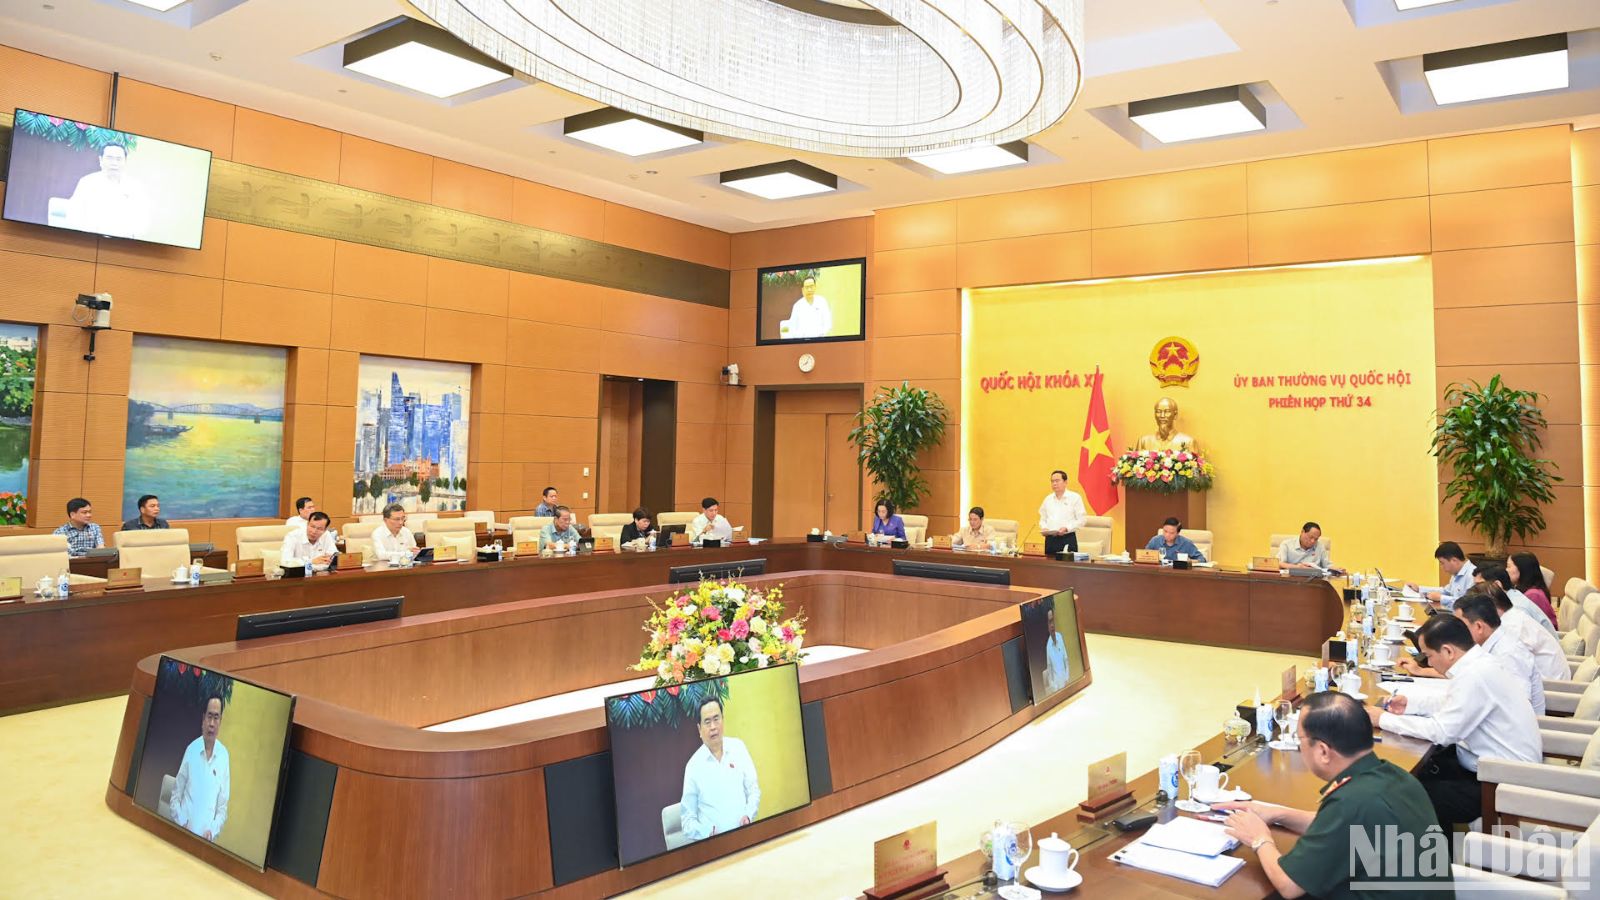 Phiên họp thứ 34 của Ủy ban Thường vụ Quốc hội sẽ diễn ra trong 3 ngày, từ ngày 11-13/6, tại phòng họp Tân Trào, Nhà Quốc hội.